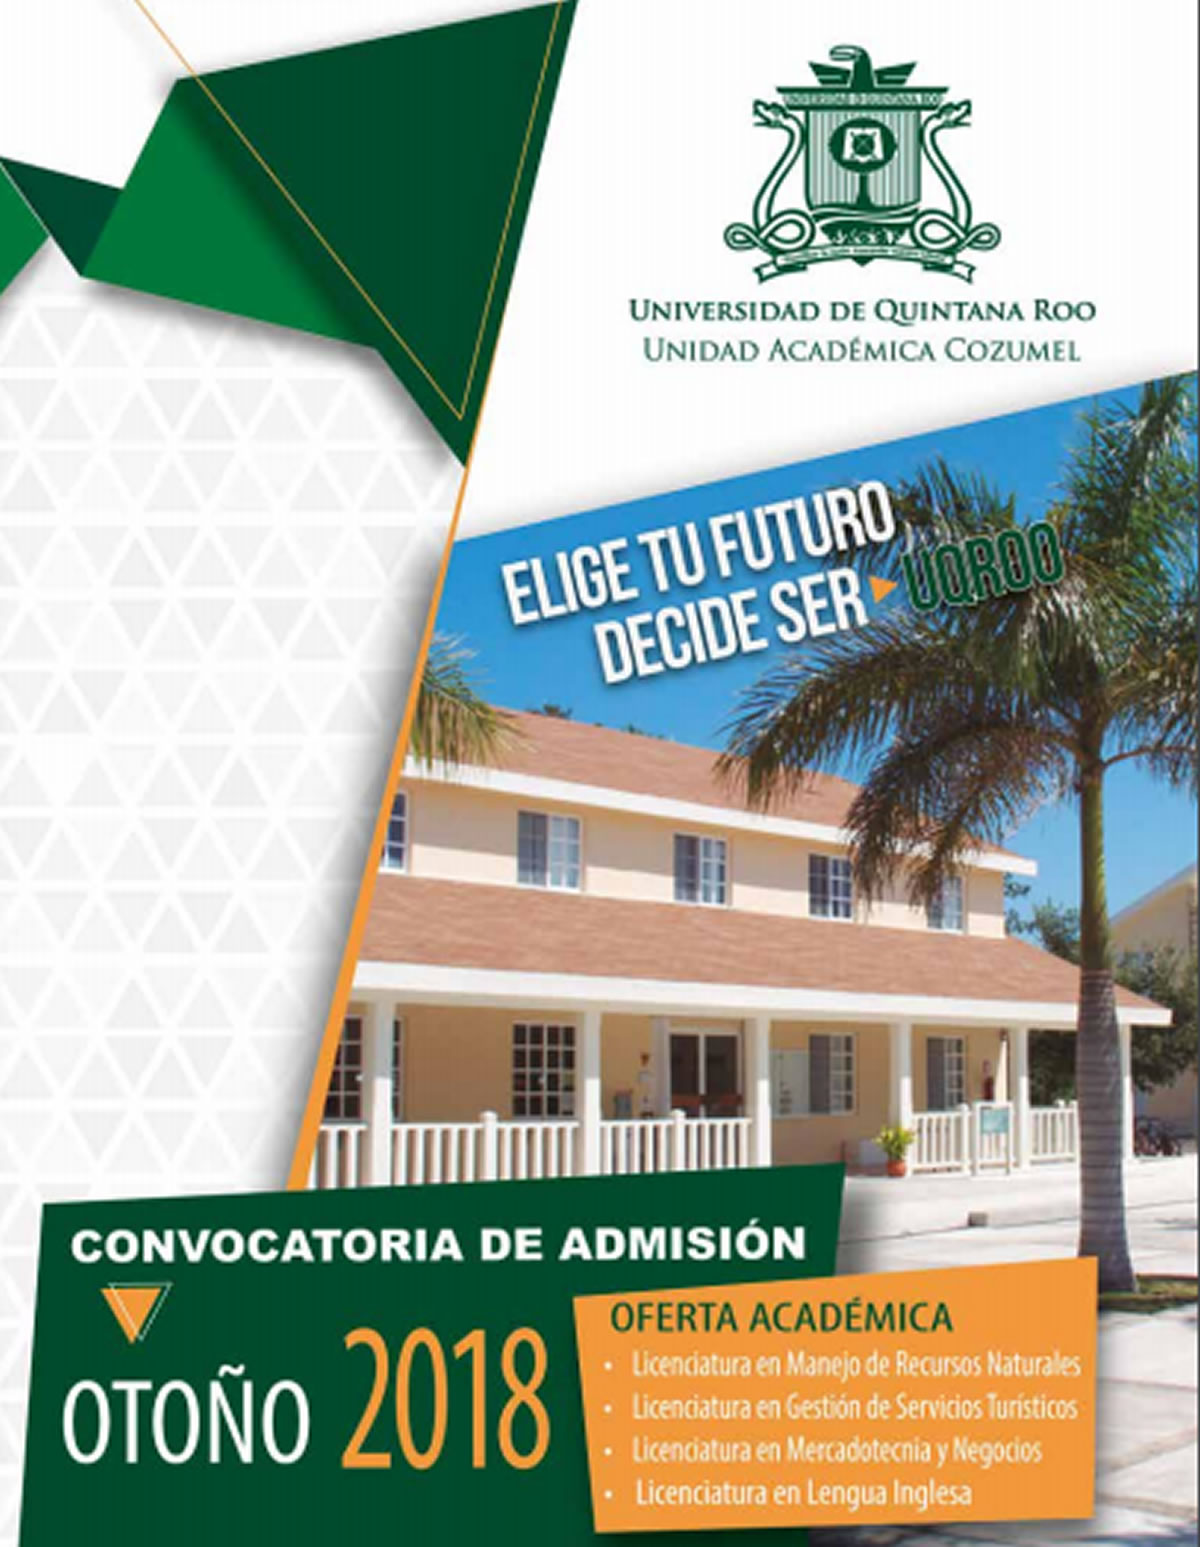 Convocatoria De Admisión Unidad Académica Cozumel - Universidad Autónoma  Del Estado De Quintana Roo